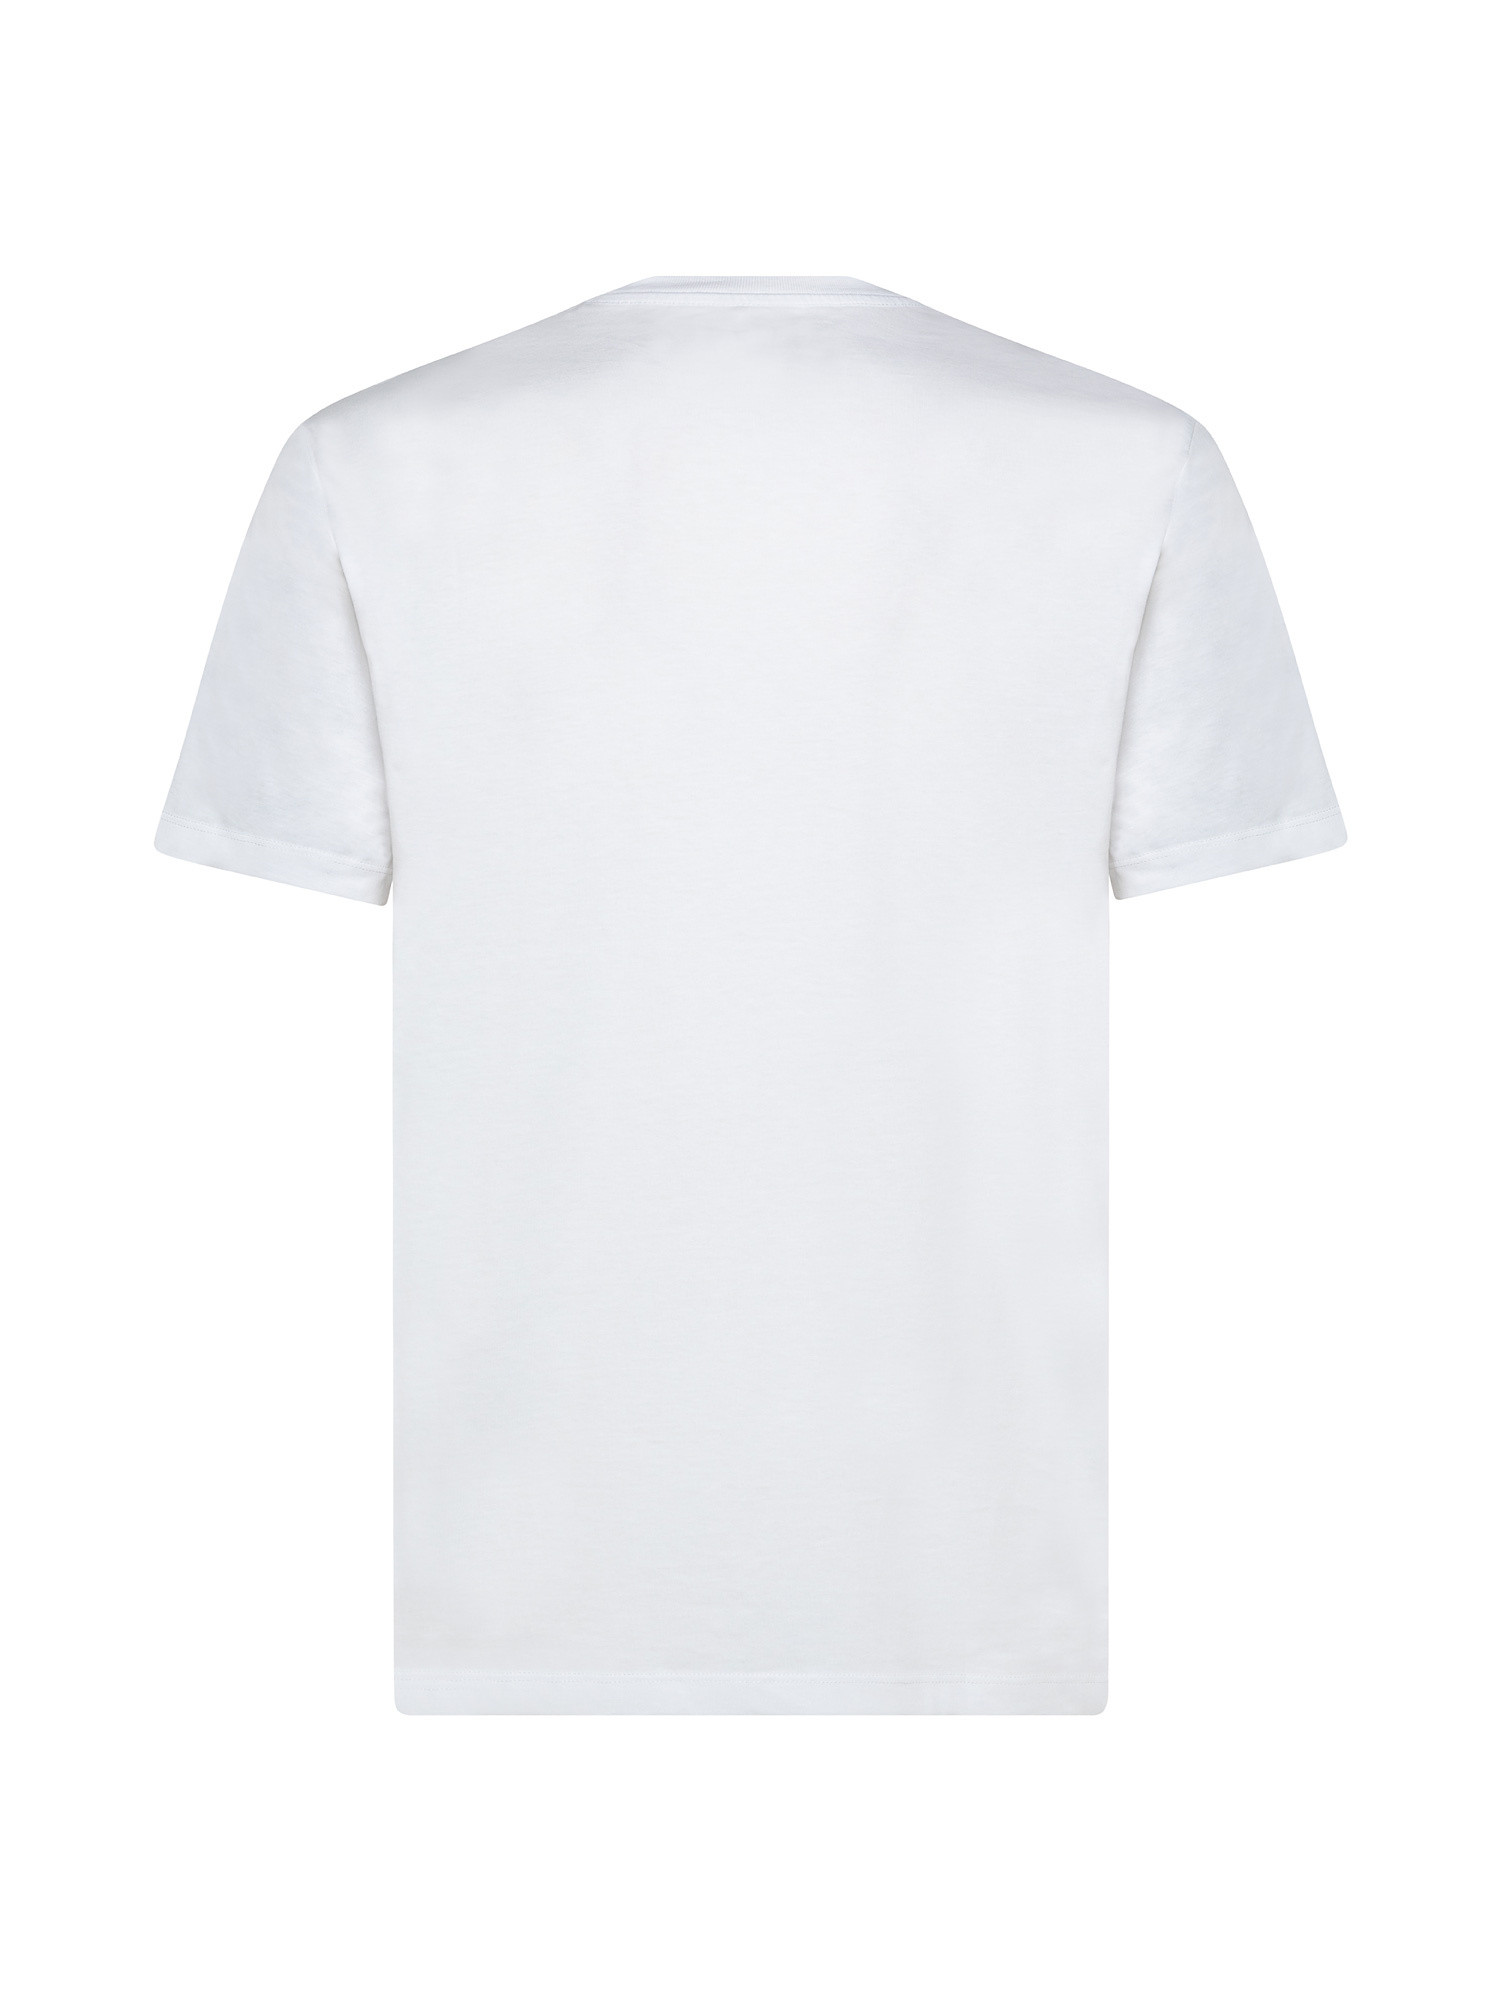 T-shirt con stampa logo, Bianco, large